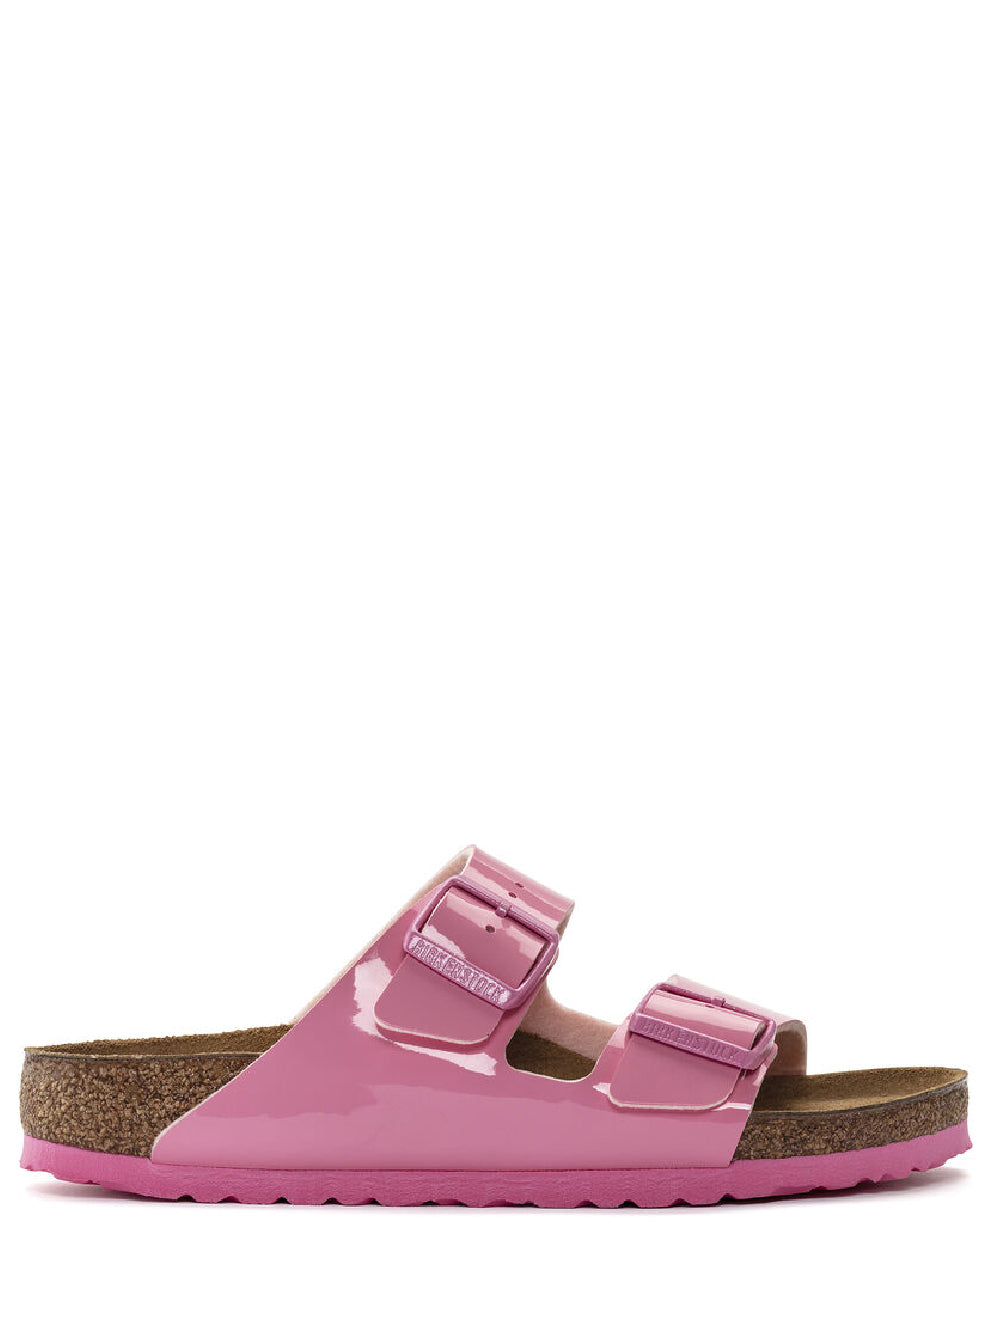 Birkenstock Sandalo Donna Candy pink